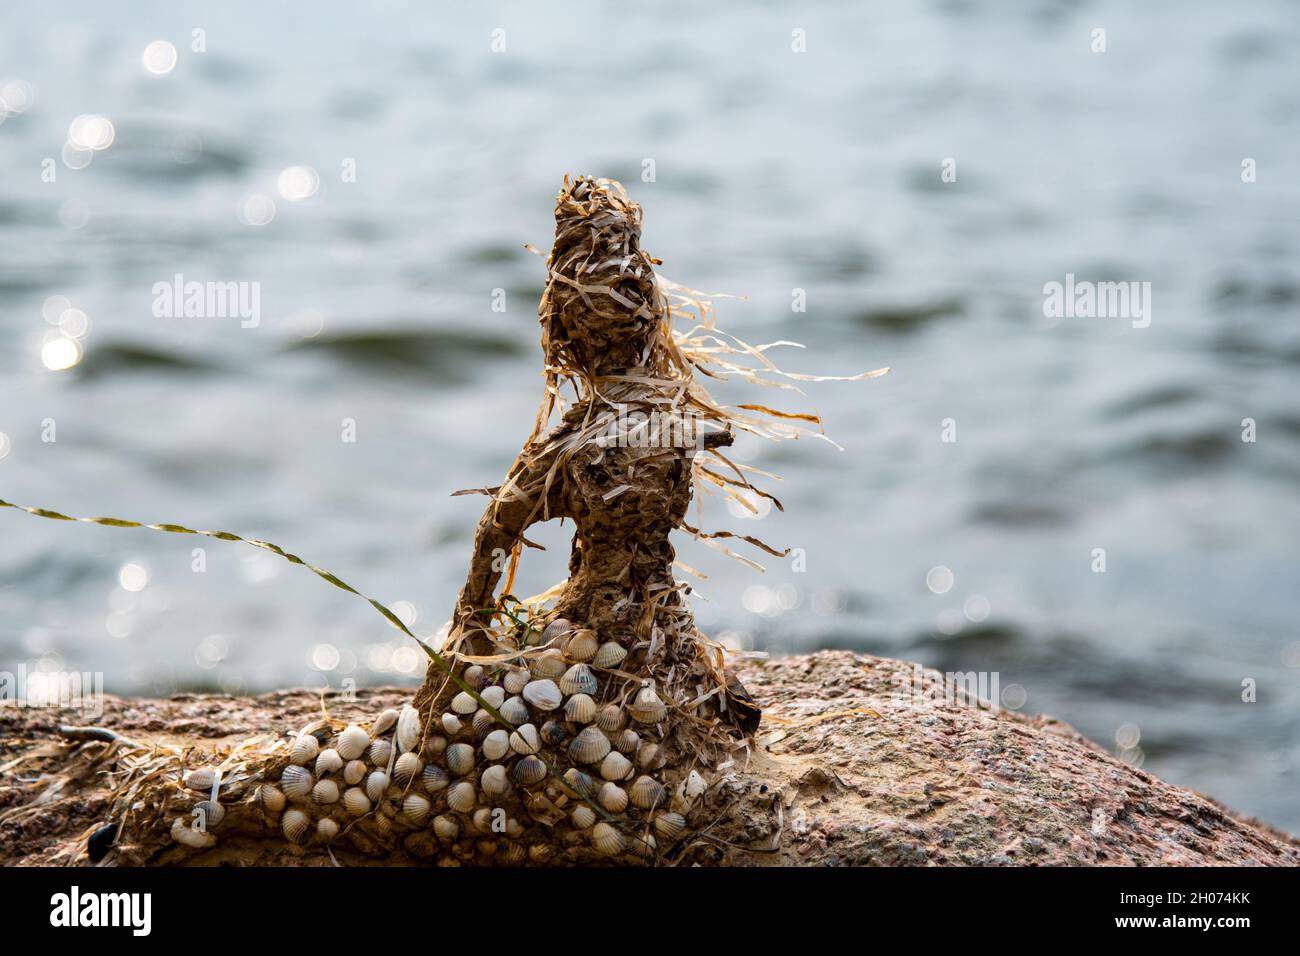 mermaid scolpito con cozze e sabbia Foto Stock